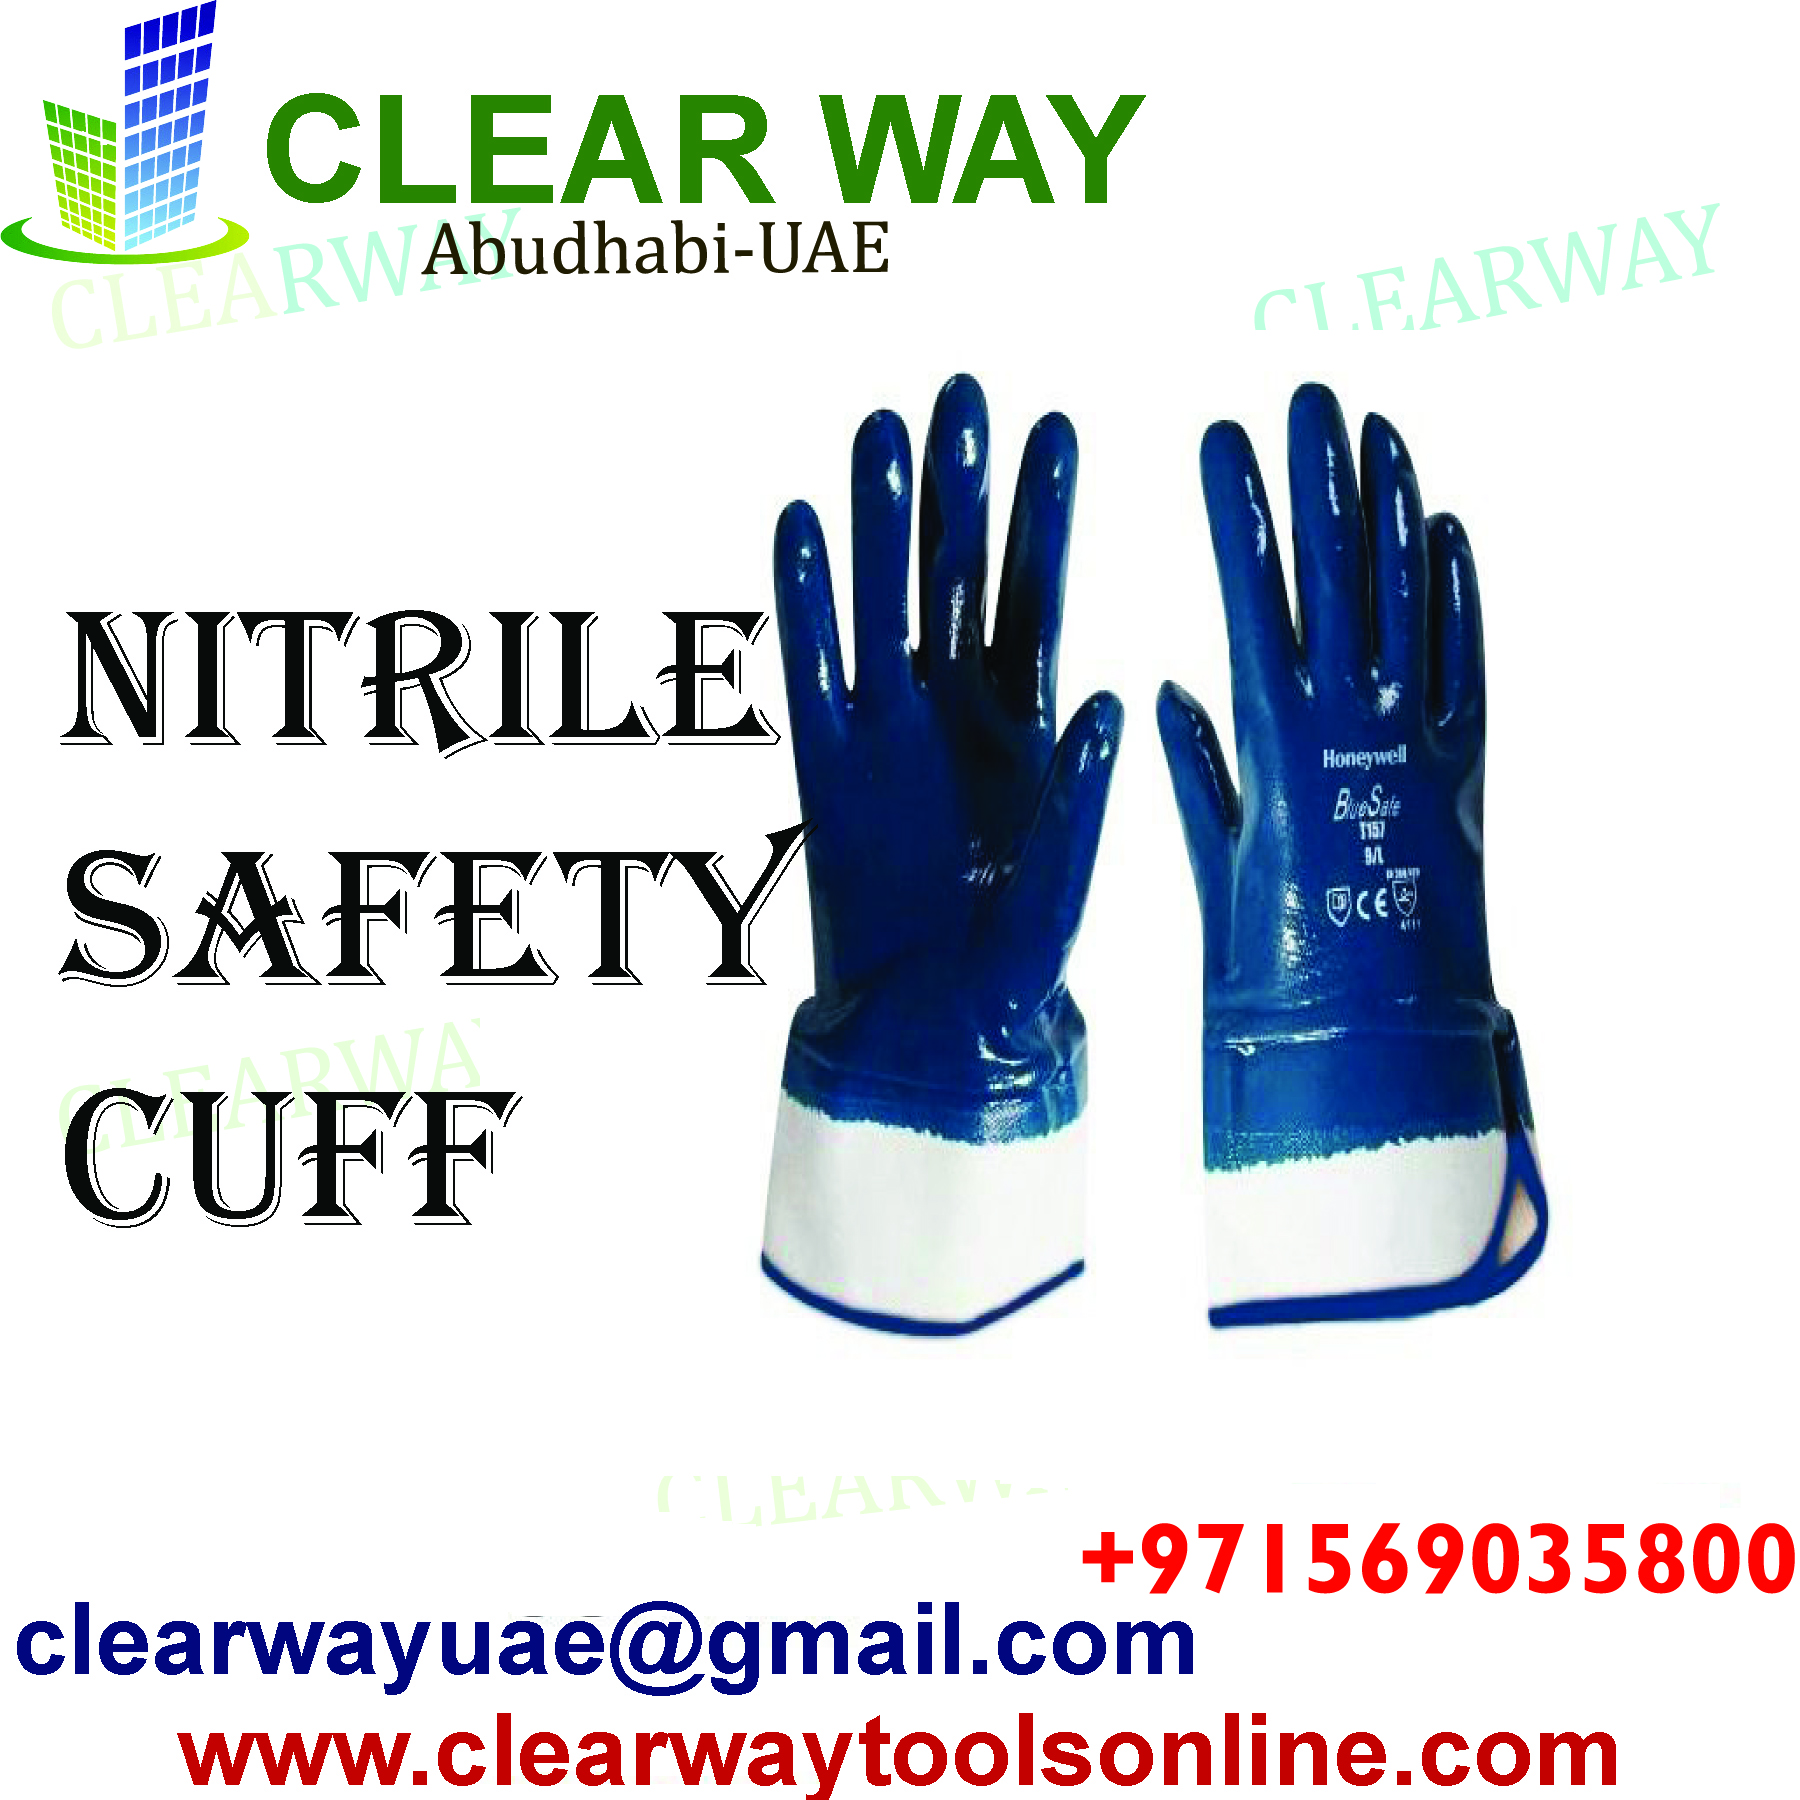 CLEARWAY NITRILE SAFETY CUFF MUSSAFAH ABUDHABI UAE